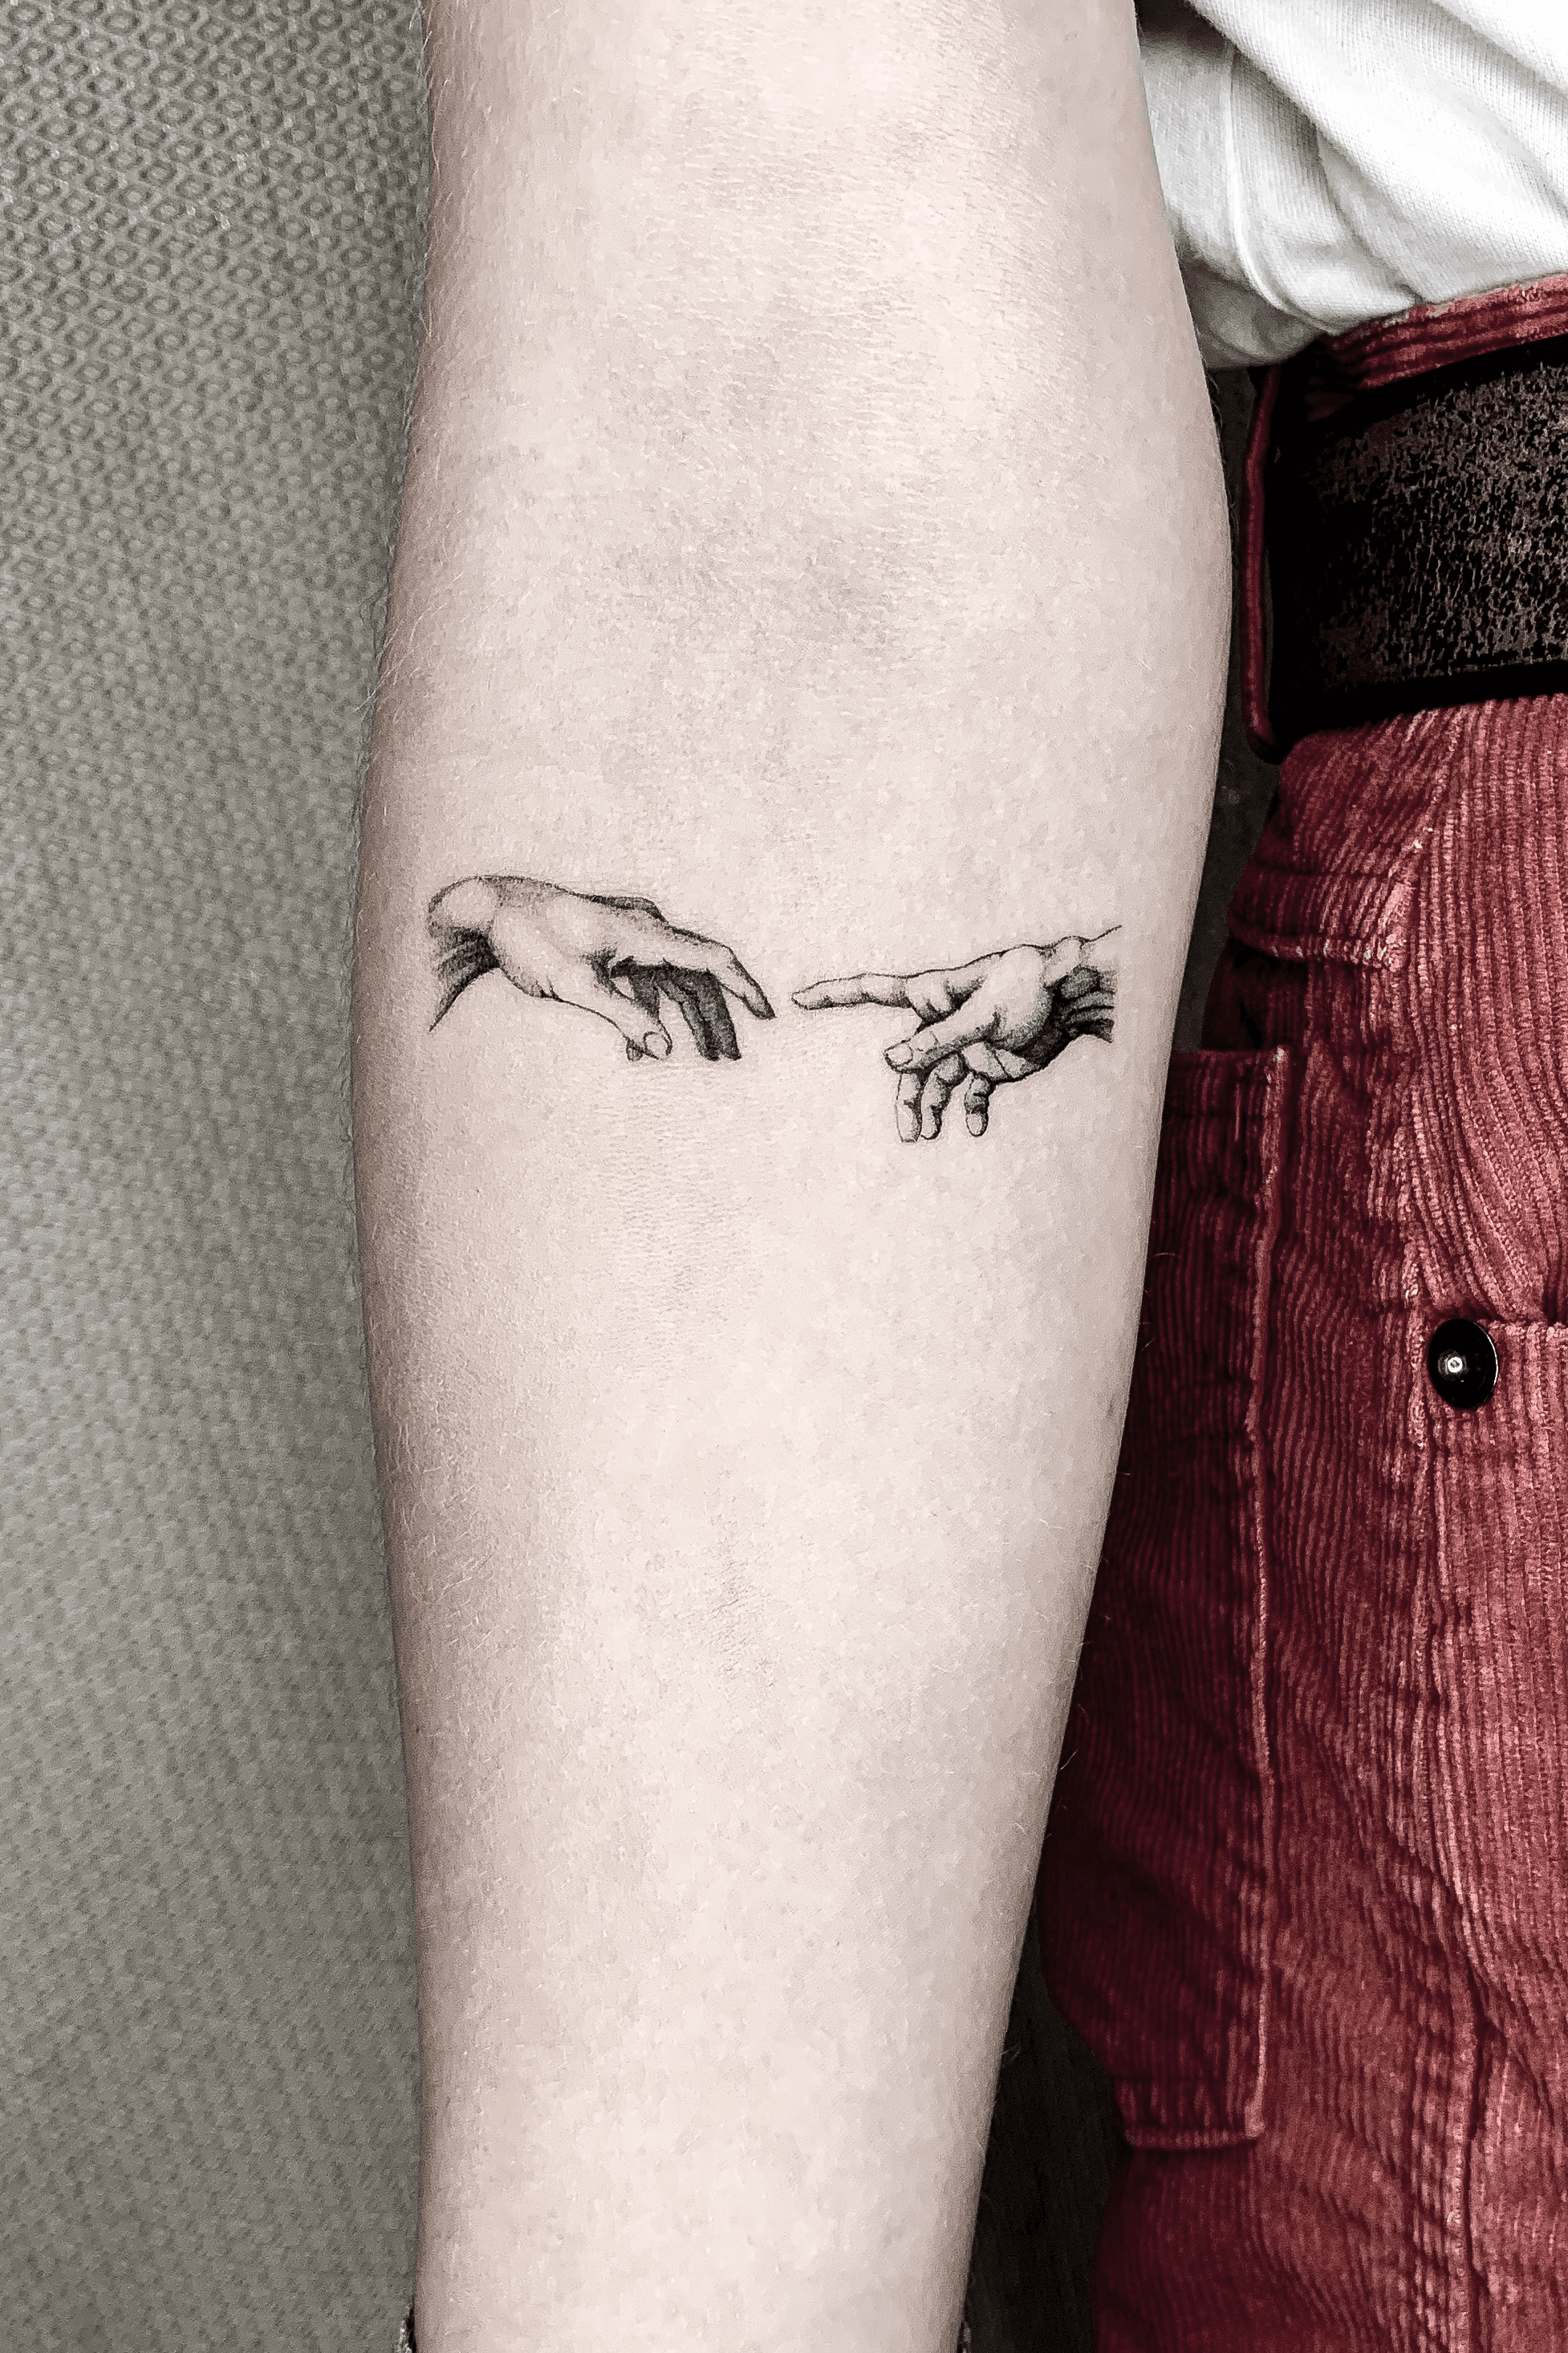 Tattoo uploaded by Tommaso Zetti • MICHELANGELO “THE CREATION OF ADAM” TATTOO #tommasozettitattoo #badbrotherstattooflorence #finelinetattoo • Tattoodo